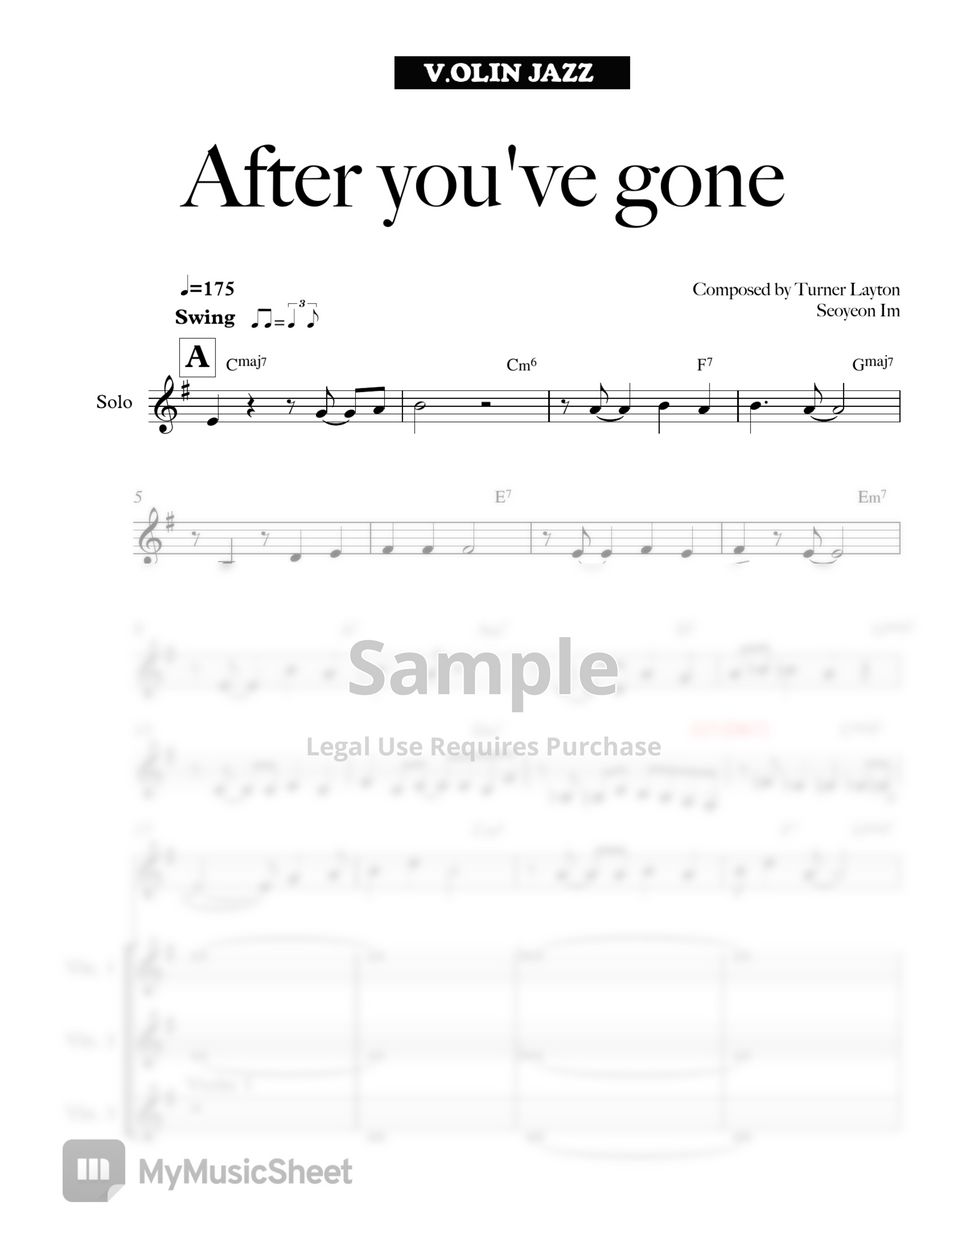 Jazz Violin - After You've Gone by V.OLIN